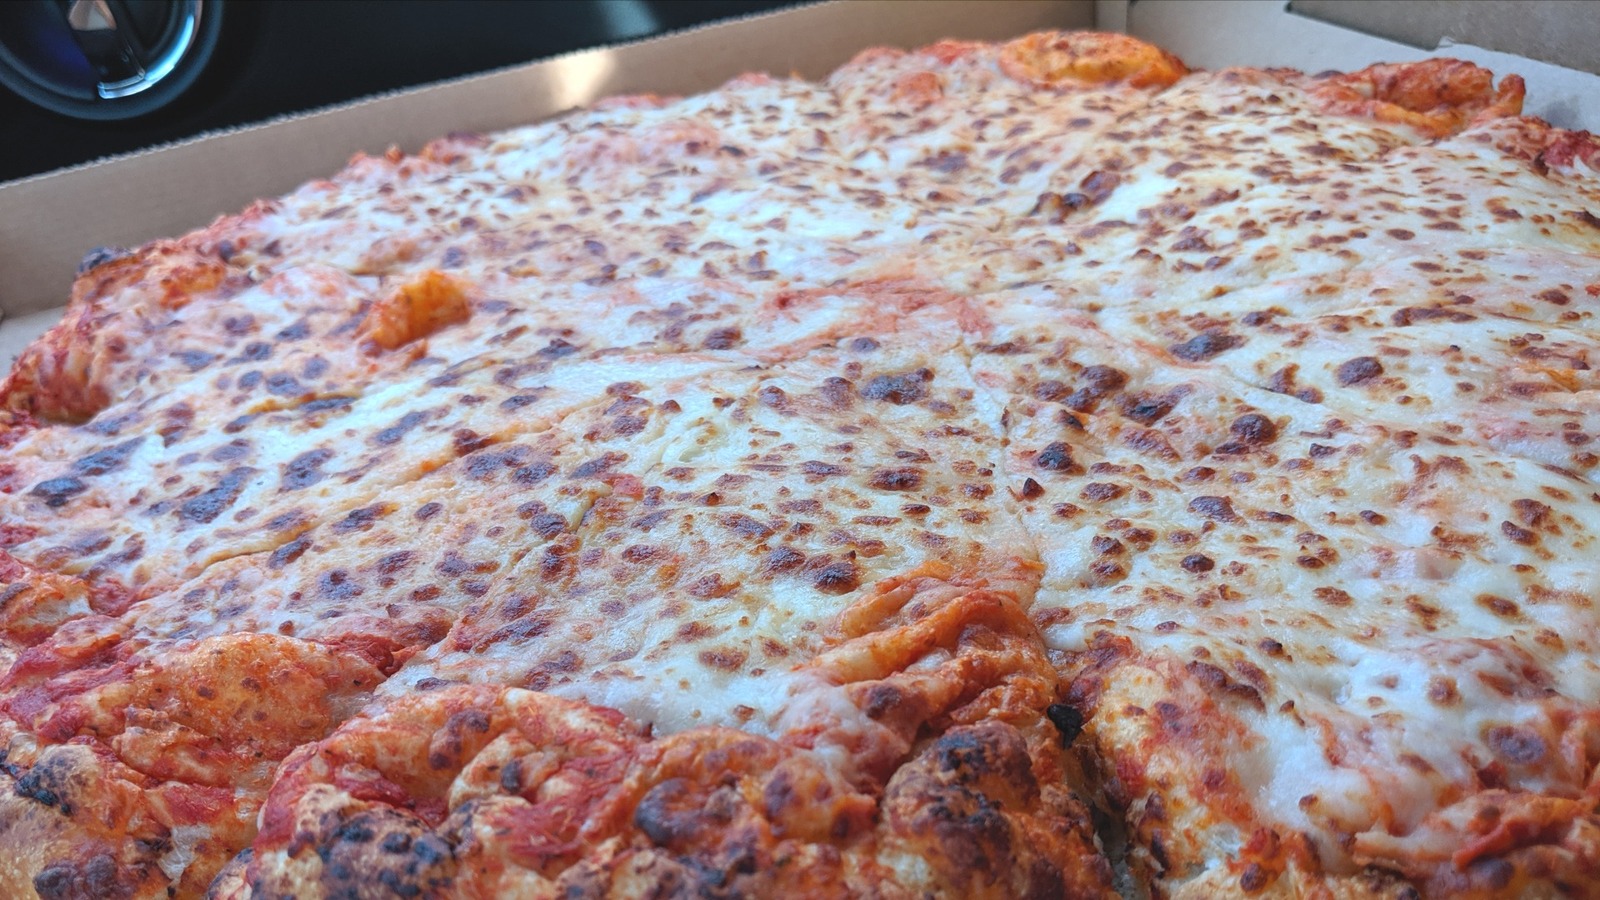 Hay una cantidad asombrosa de queso en la pizza del patio de comidas de Costco